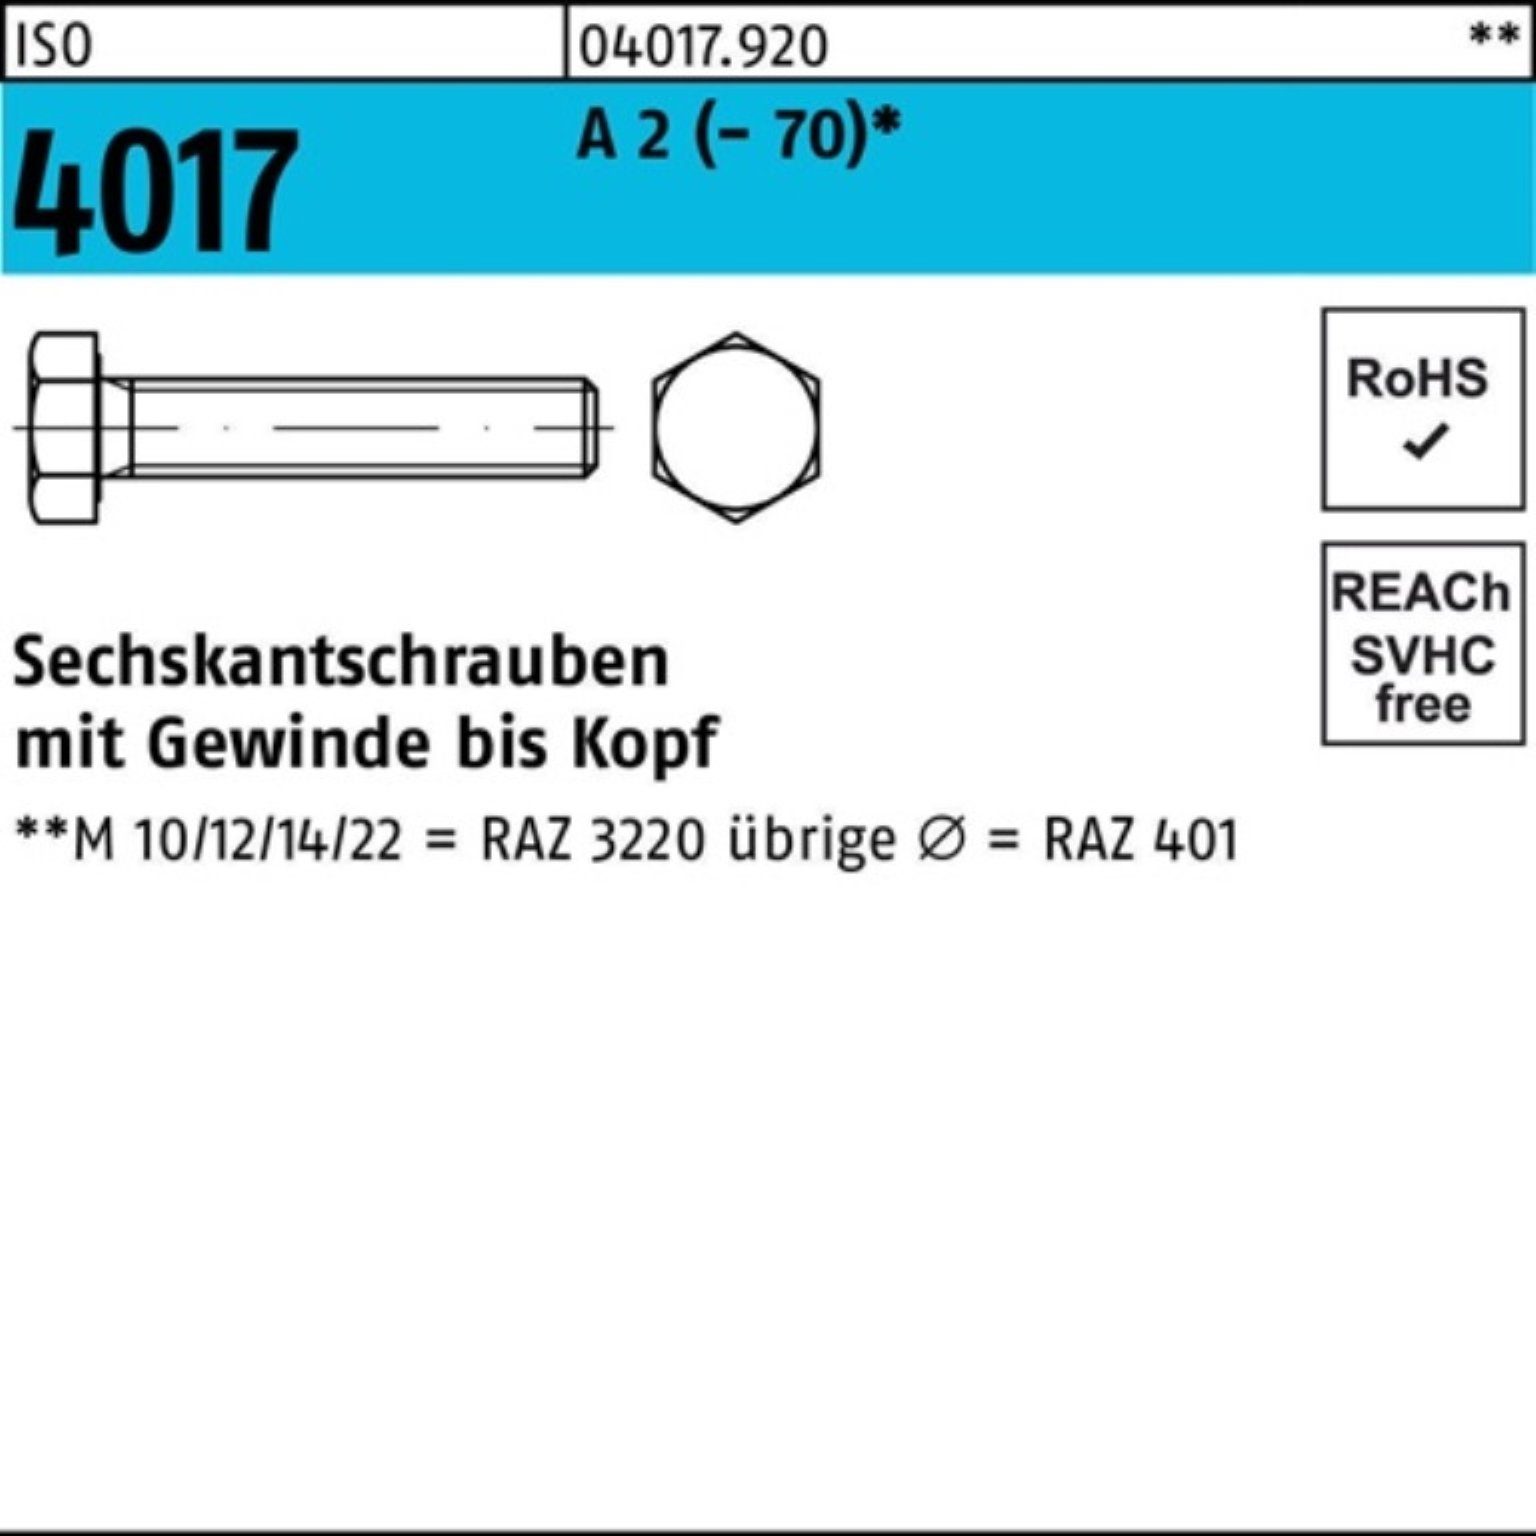 Bufab Sechskantschraube 60 (70) 100 M4x Pack ISO VG 2 Sechskantschraube Stück 100er 4017 A